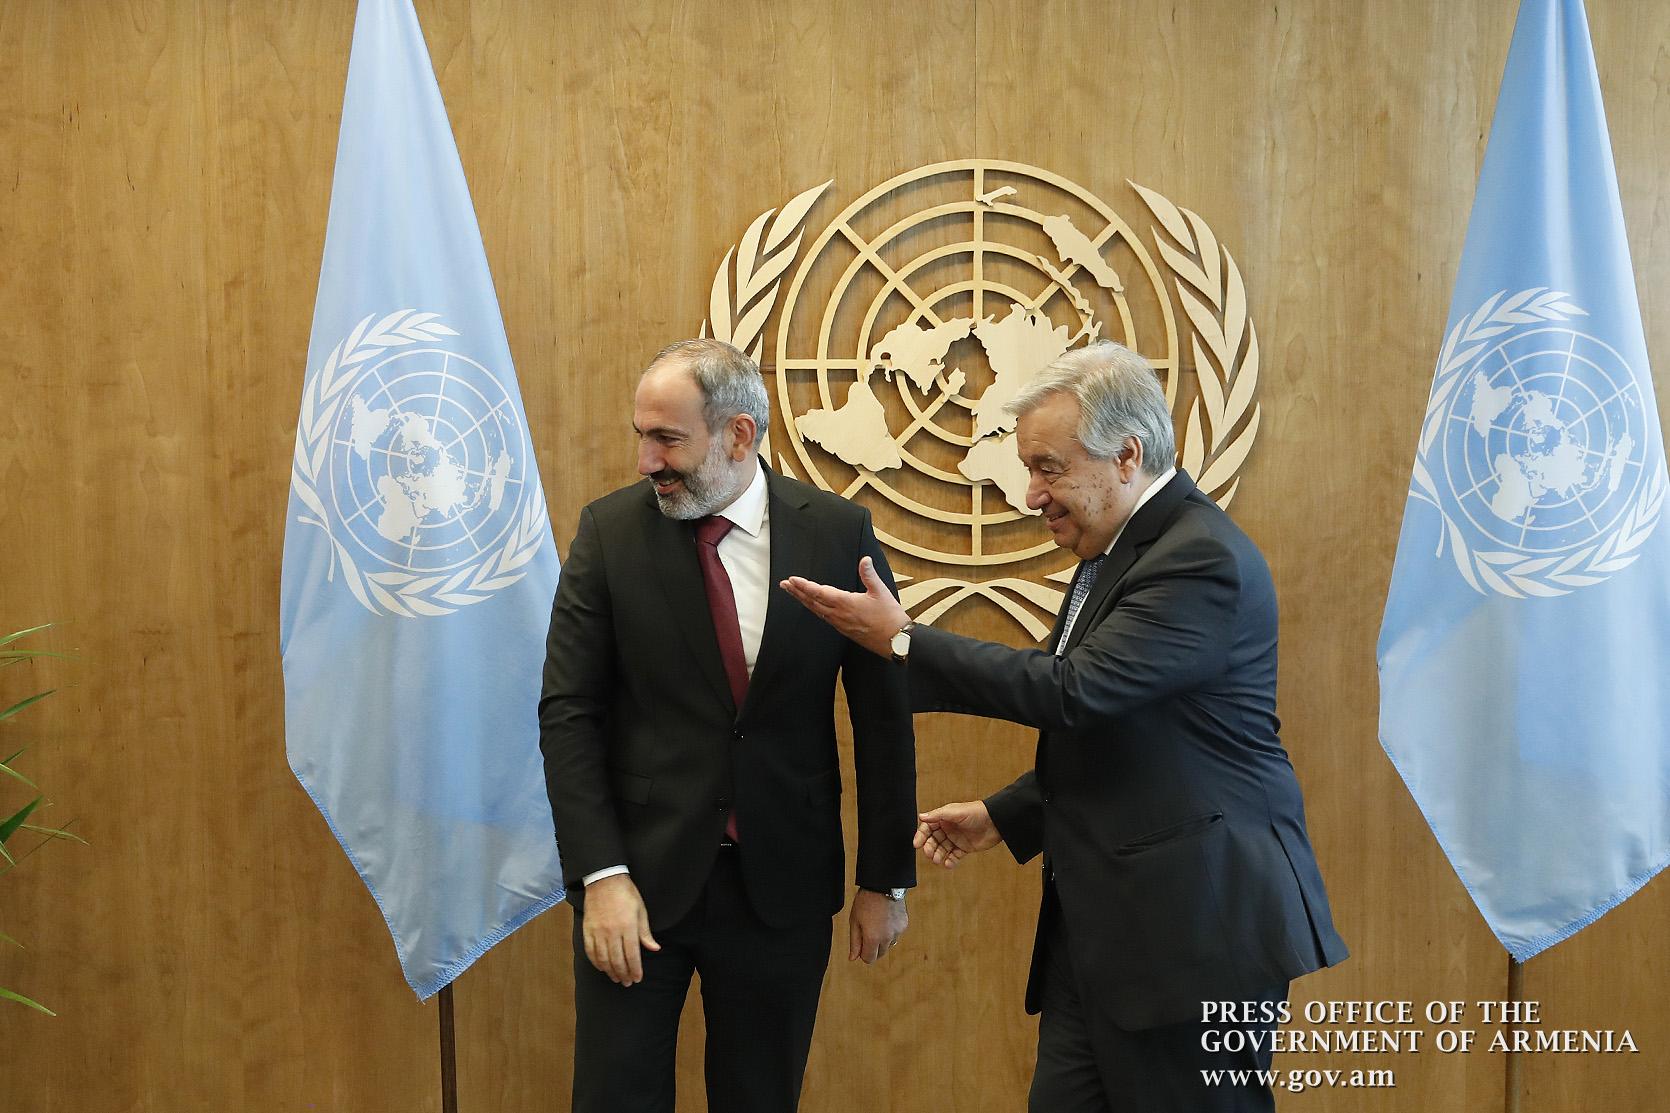 Հայաստանում իշխանությունը խաղաղ փոխանցելու գործընթացը փայլուն օրինակ է․ ՄԱԿ-ի գլխավոր քարտուղար